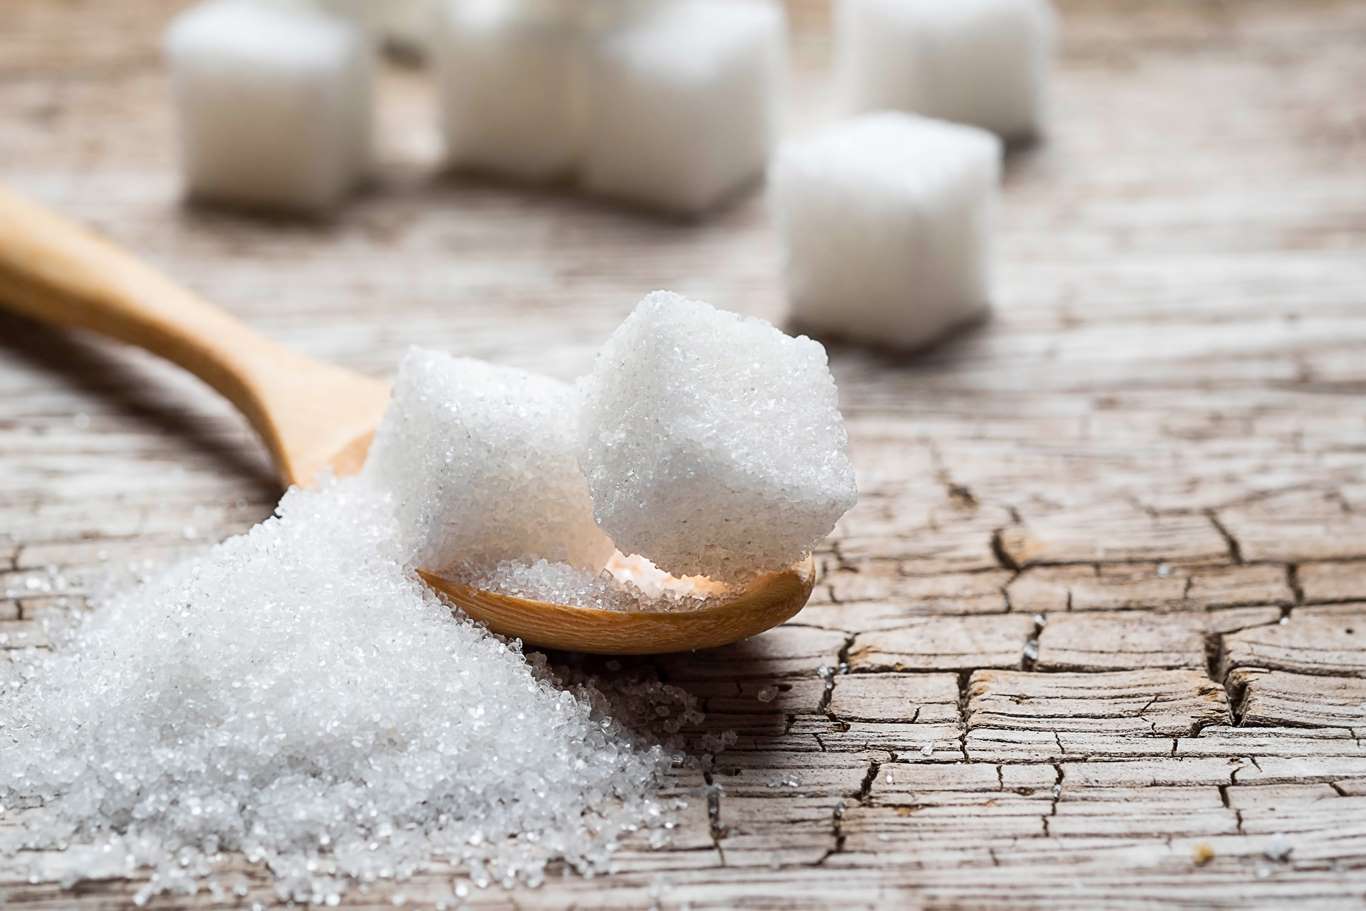 El cáncer se ve favorecido por el consumo de azúcar refinado. Este producto permite la multiplicación de células cancerosas. Entre todos los alimentos que contienen azúcar refinado el jarabe de maíz es especialmente perjudicial para la salud.